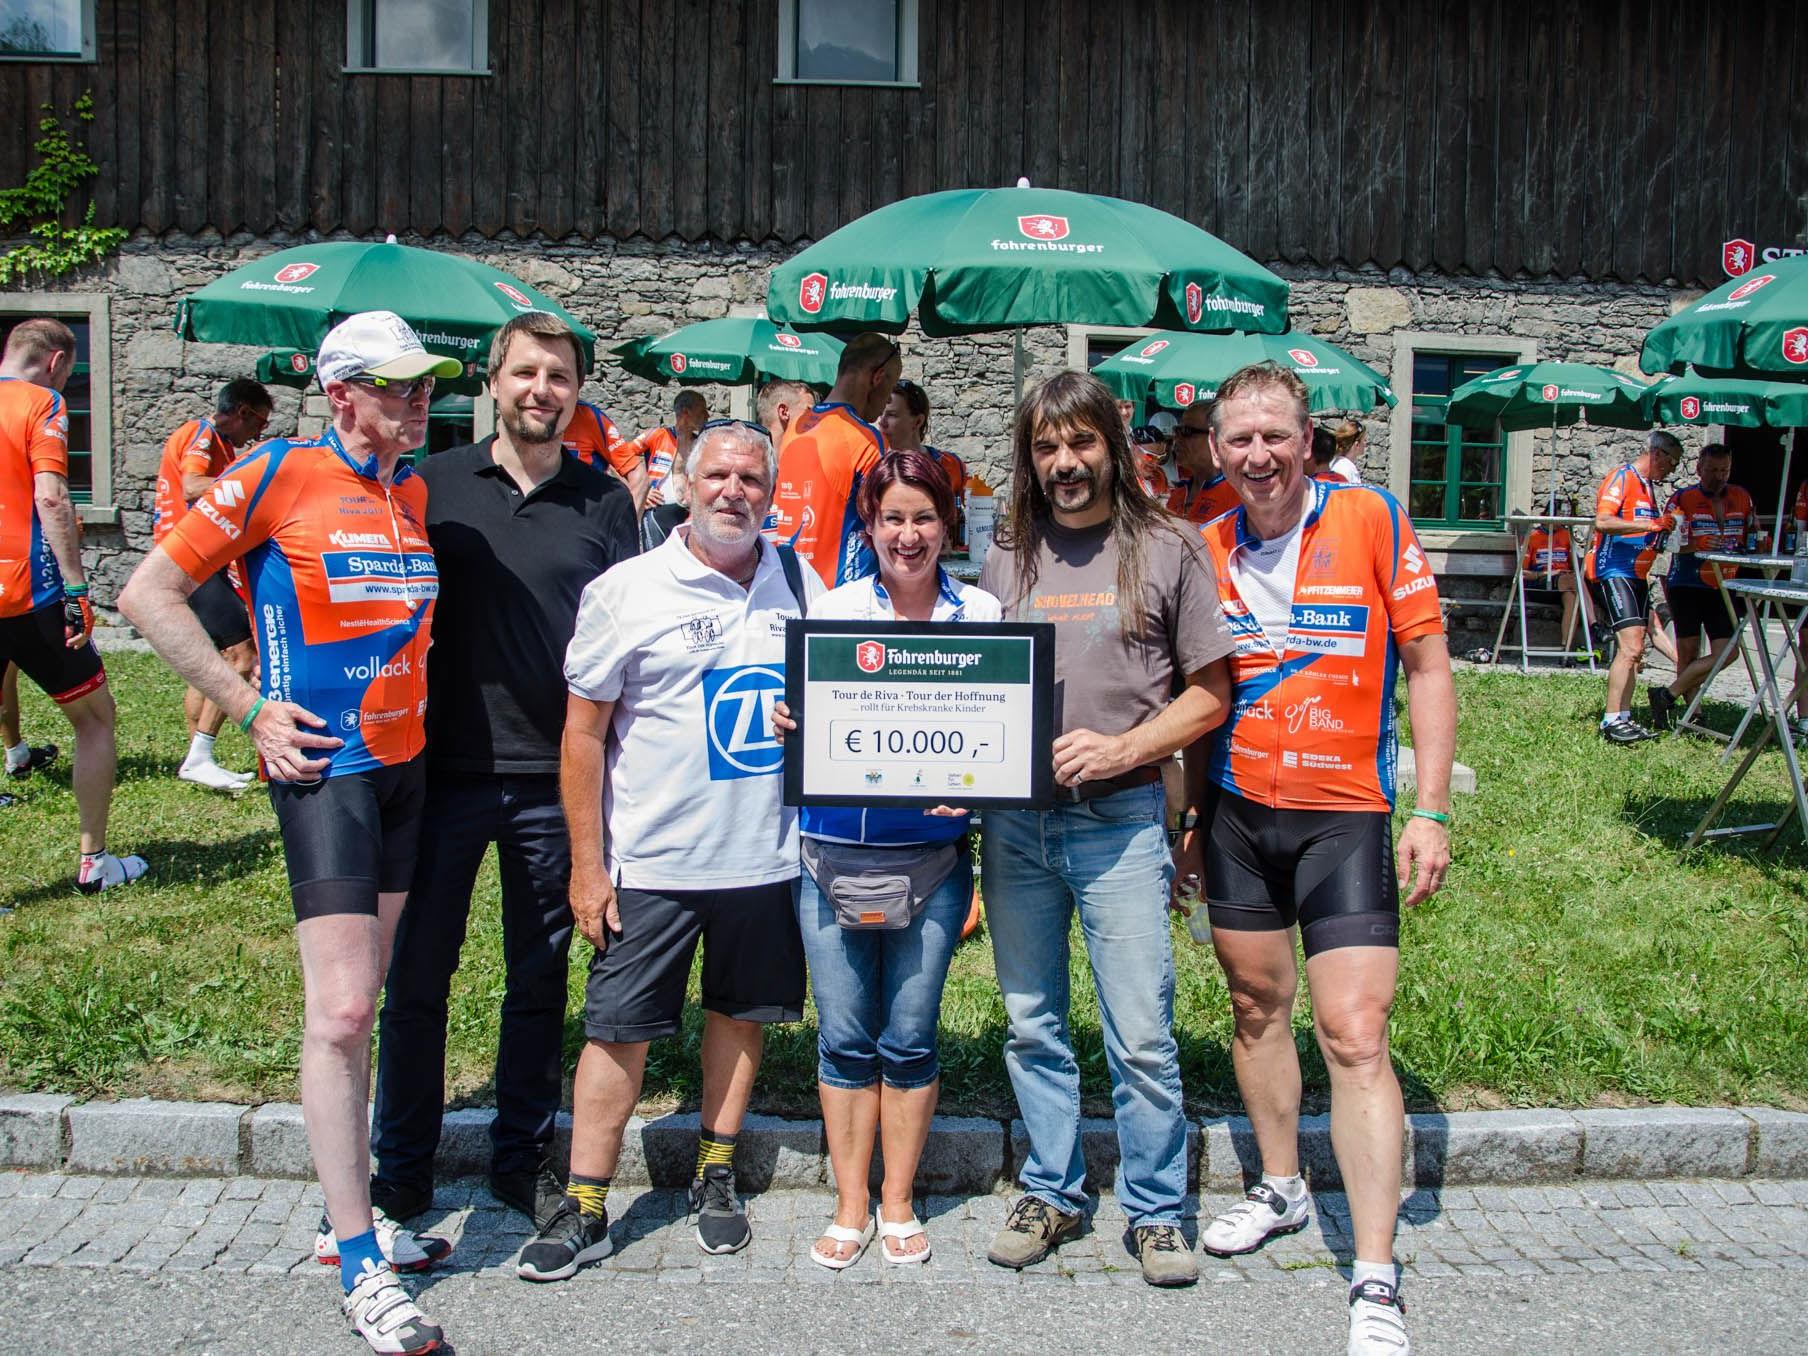 10.000 Euro wurden dem Verein "Geben für Leben" gespendet